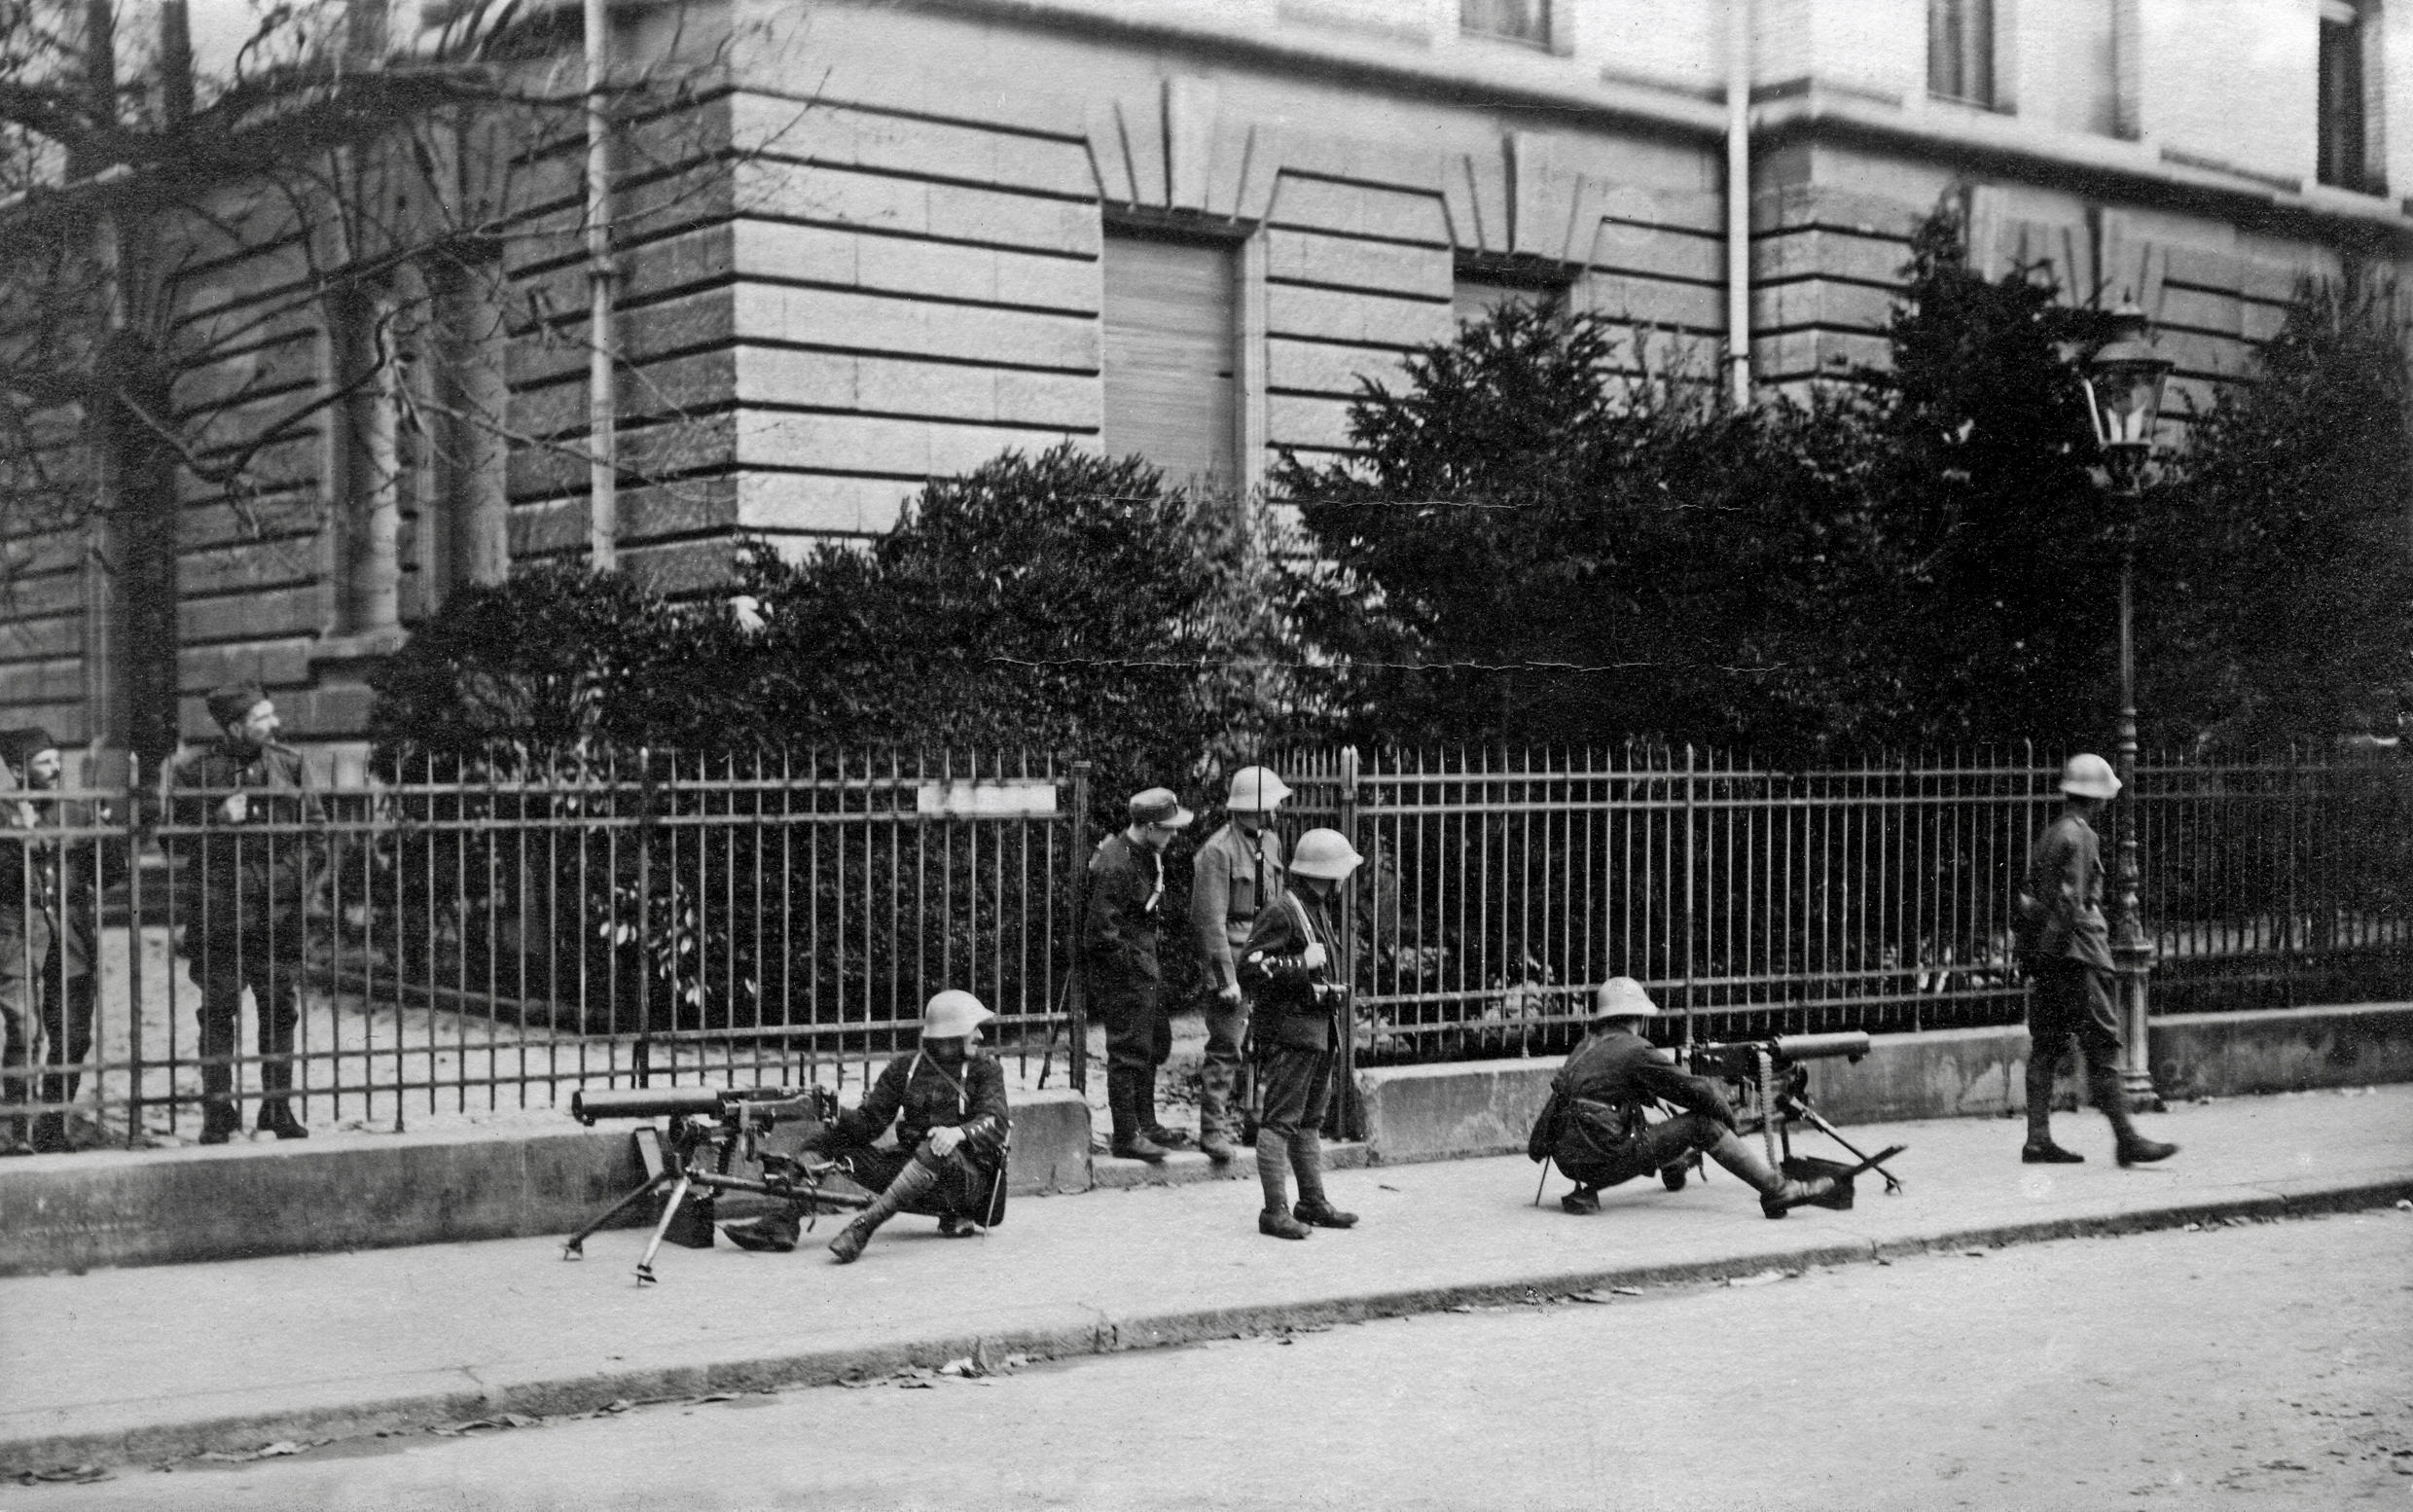 Soldats avec des mitrailleuses à Zurich en 1918.